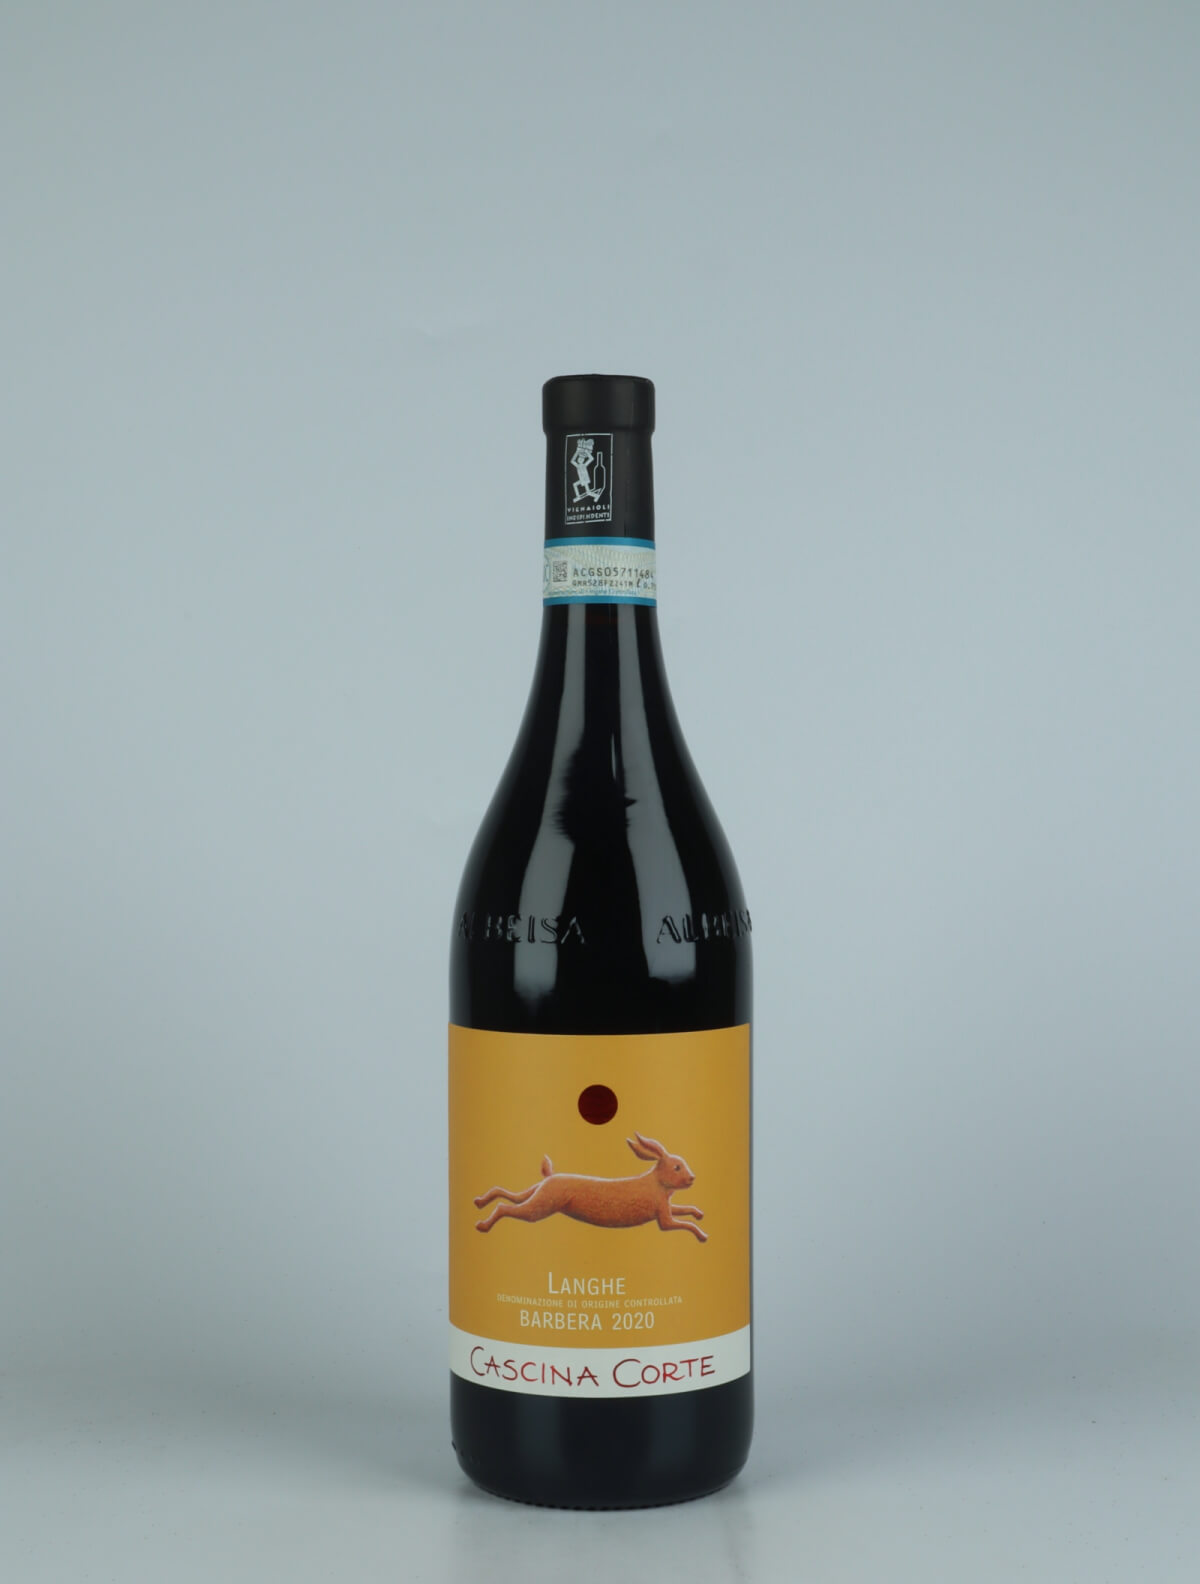 En flaske 2020 Langhe Barbera Rødvin fra Cascina Corte, Piemonte i Italien